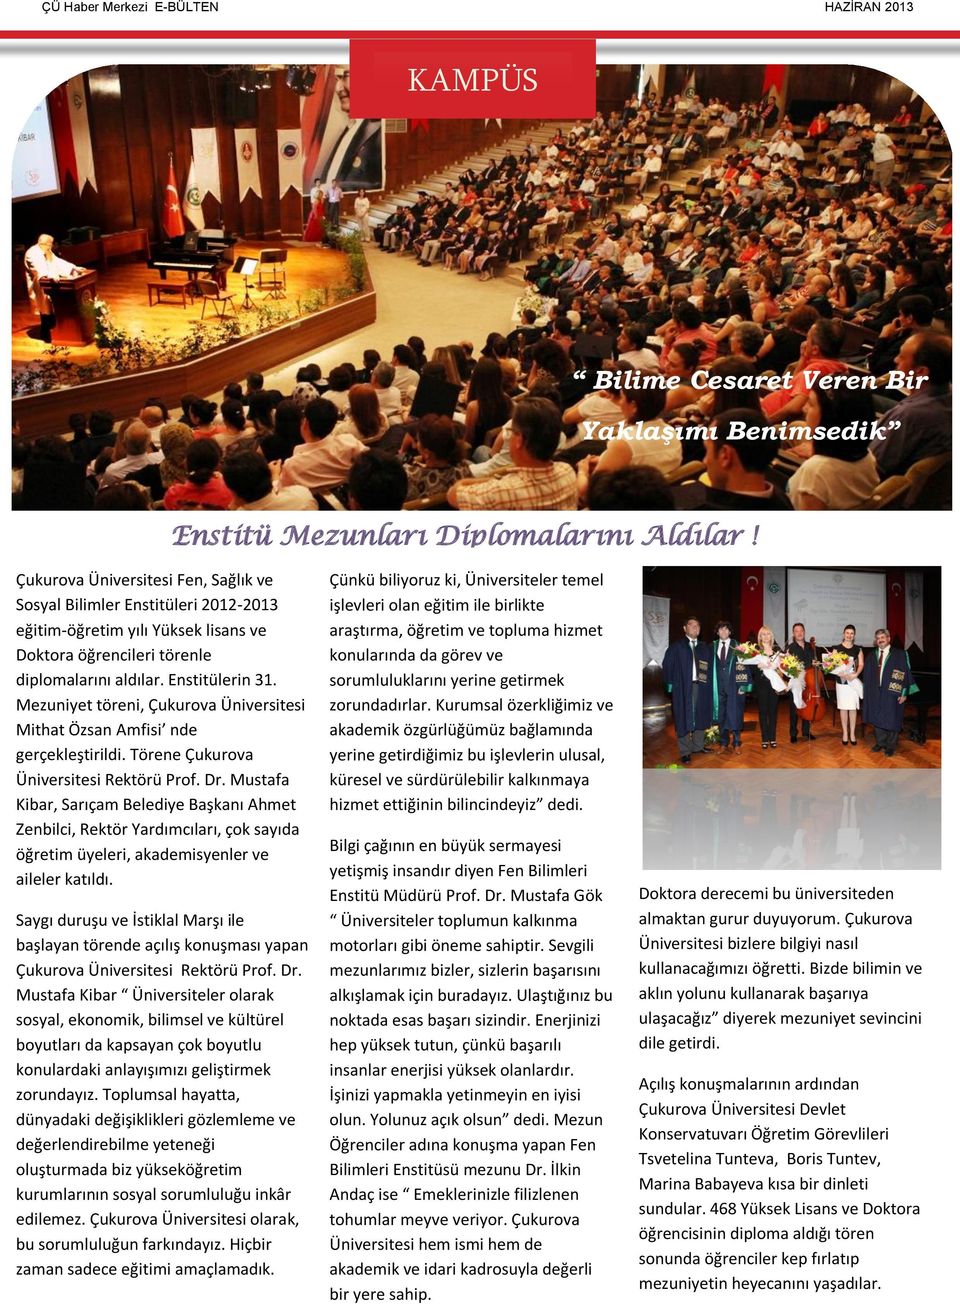 Mezuniyet töreni, Çukurova Üniversitesi Mithat Özsan Amfisi nde gerçekleştirildi. Törene Çukurova Üniversitesi Rektörü Prof. Dr.